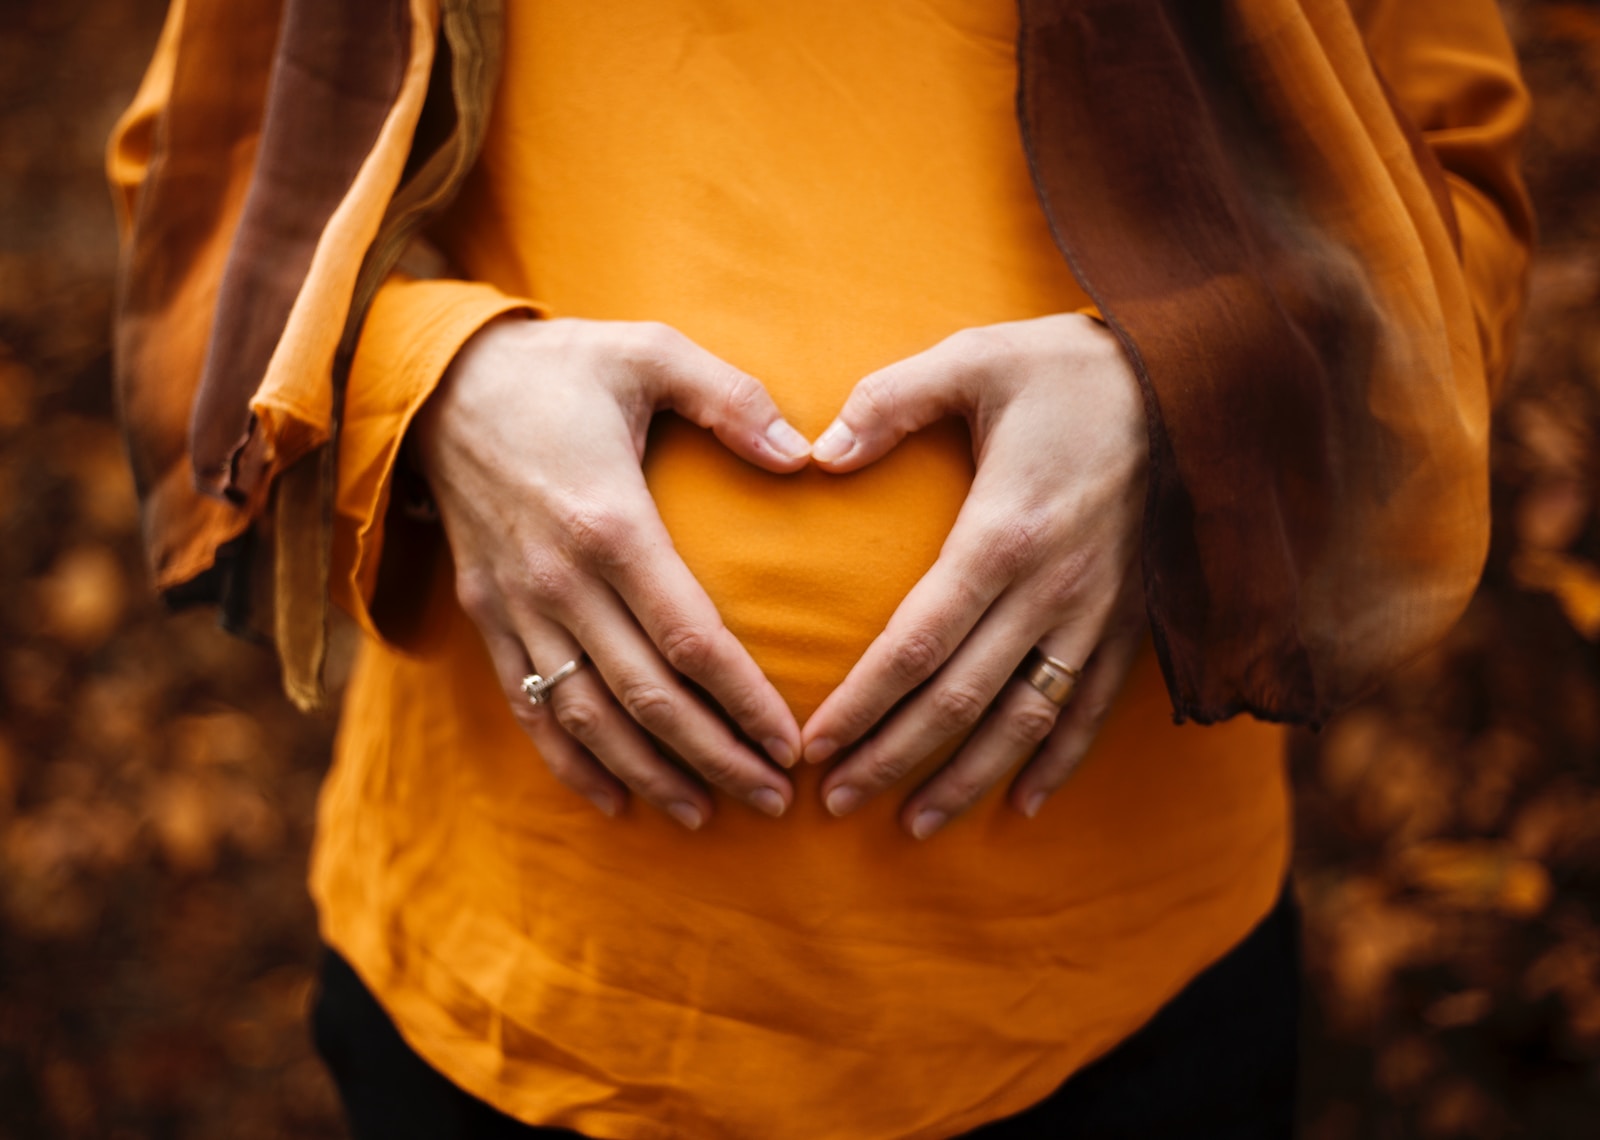 רשלנות רפואית בהריון - כל מה שחשוב לדעת